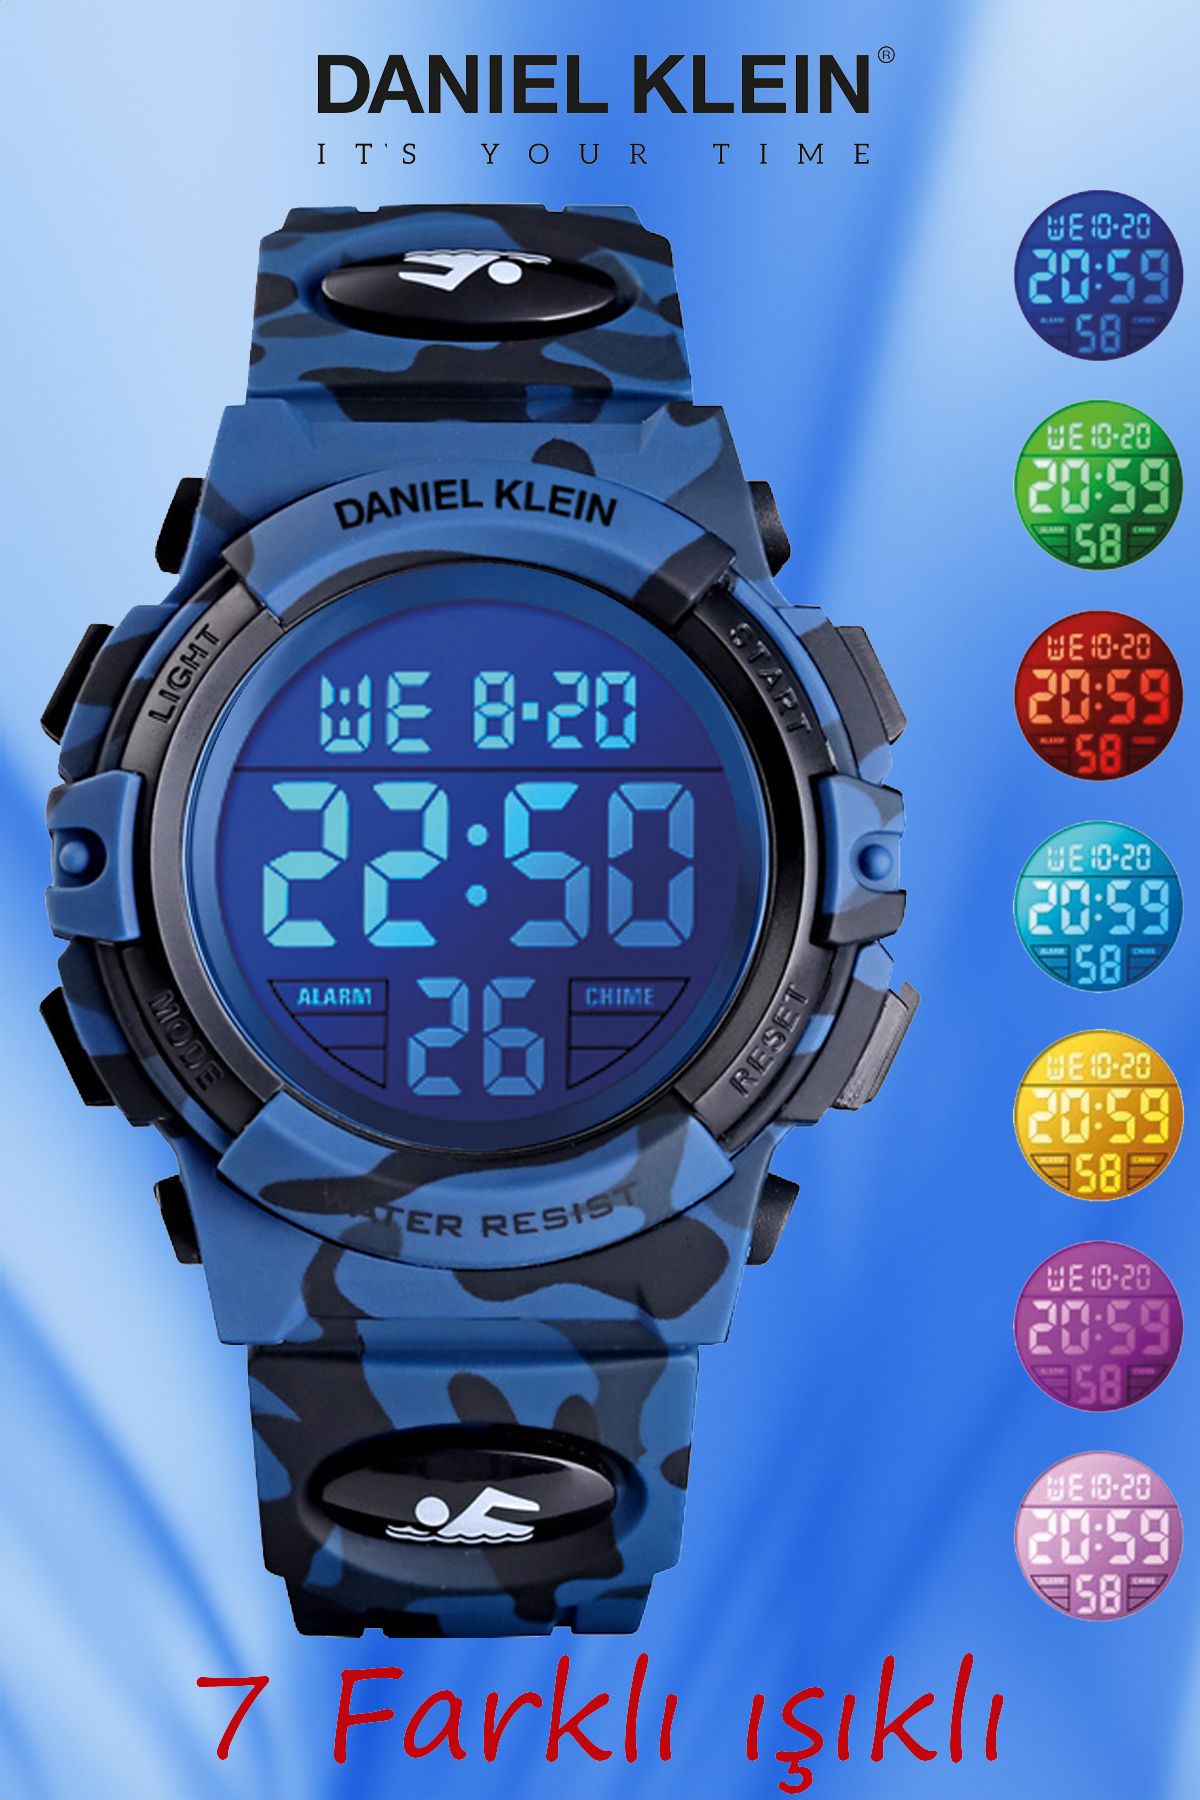 Daniel Klein 8-12 Yaş için Alarm ve Kronometre Özellikli, 7 Farklı Işıklı Koyu Mavi Kamuflaj Çocuk Kol Saati